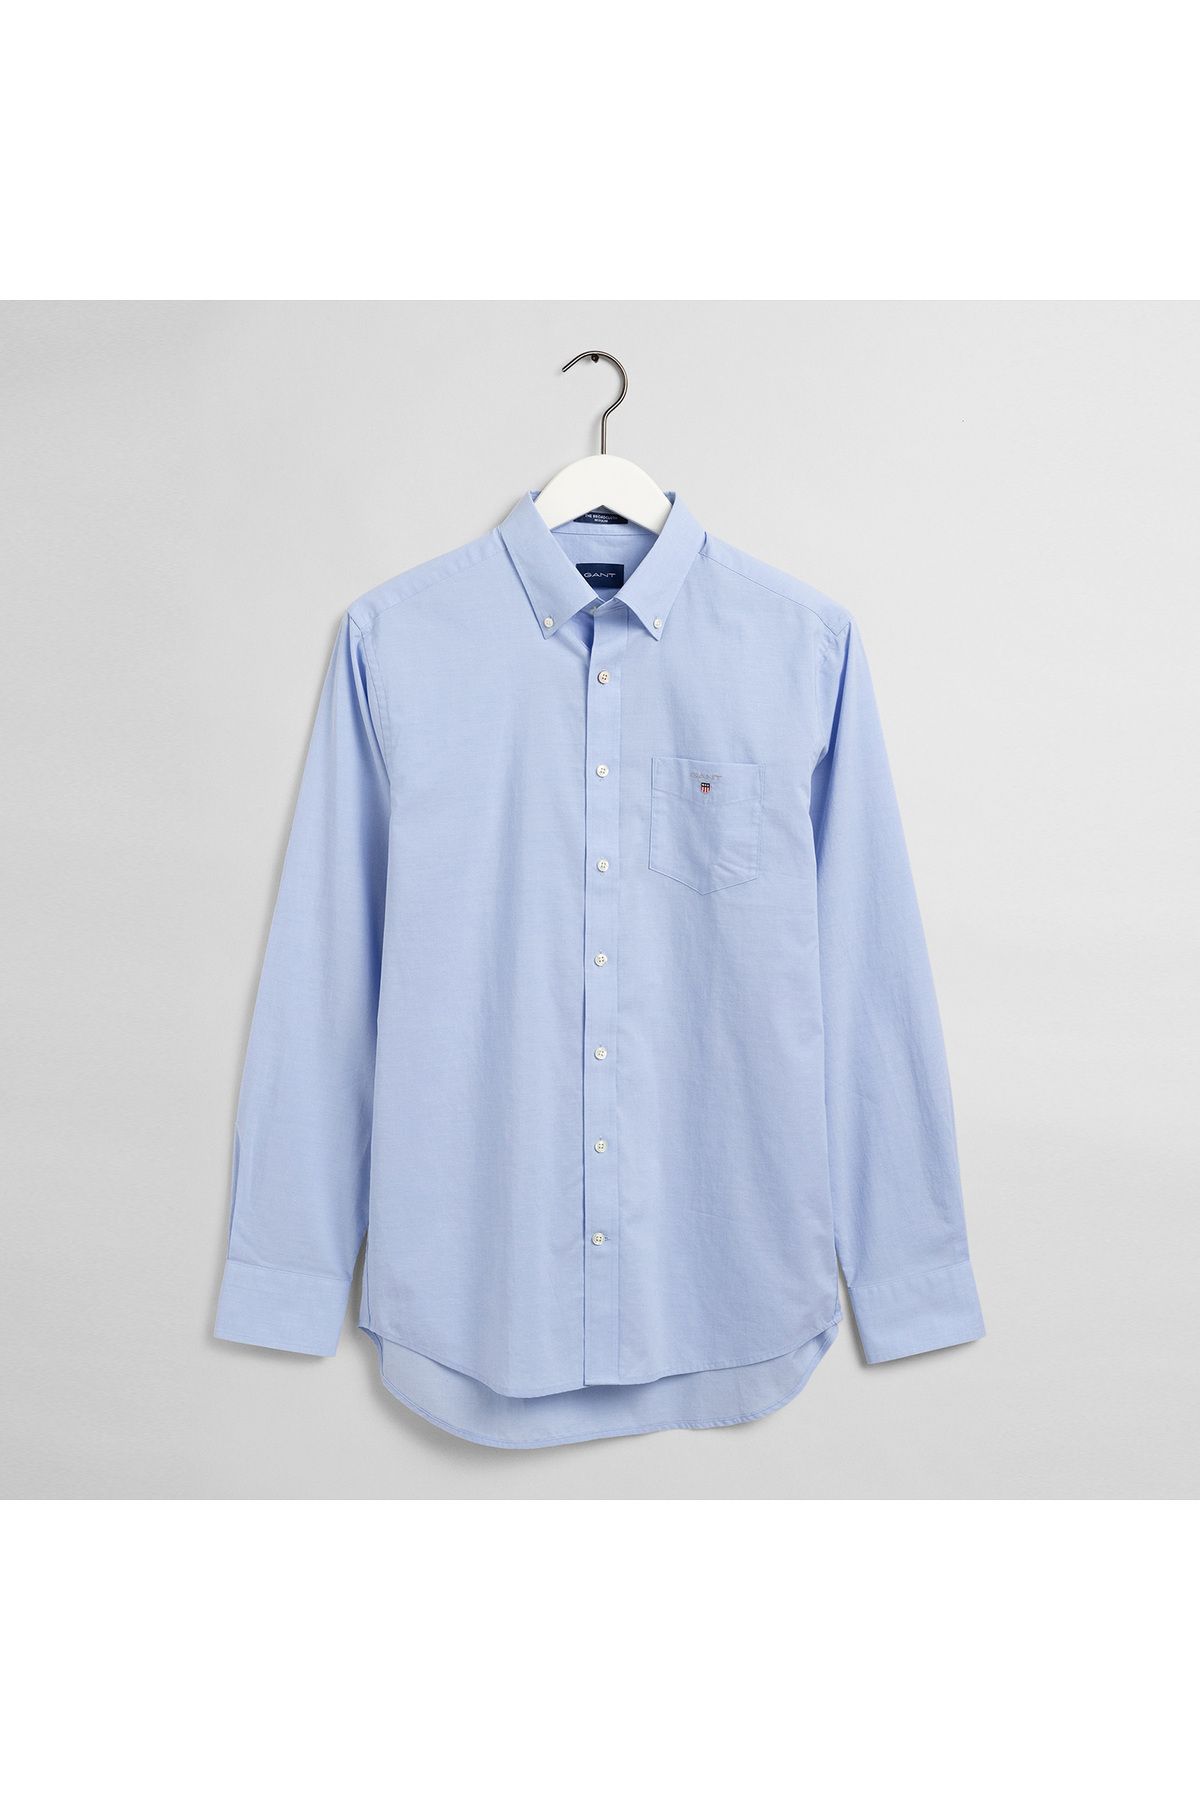 Gant Erkek Mavi Regular Fit Düğmeli Yaka Broadcloth Gömlek